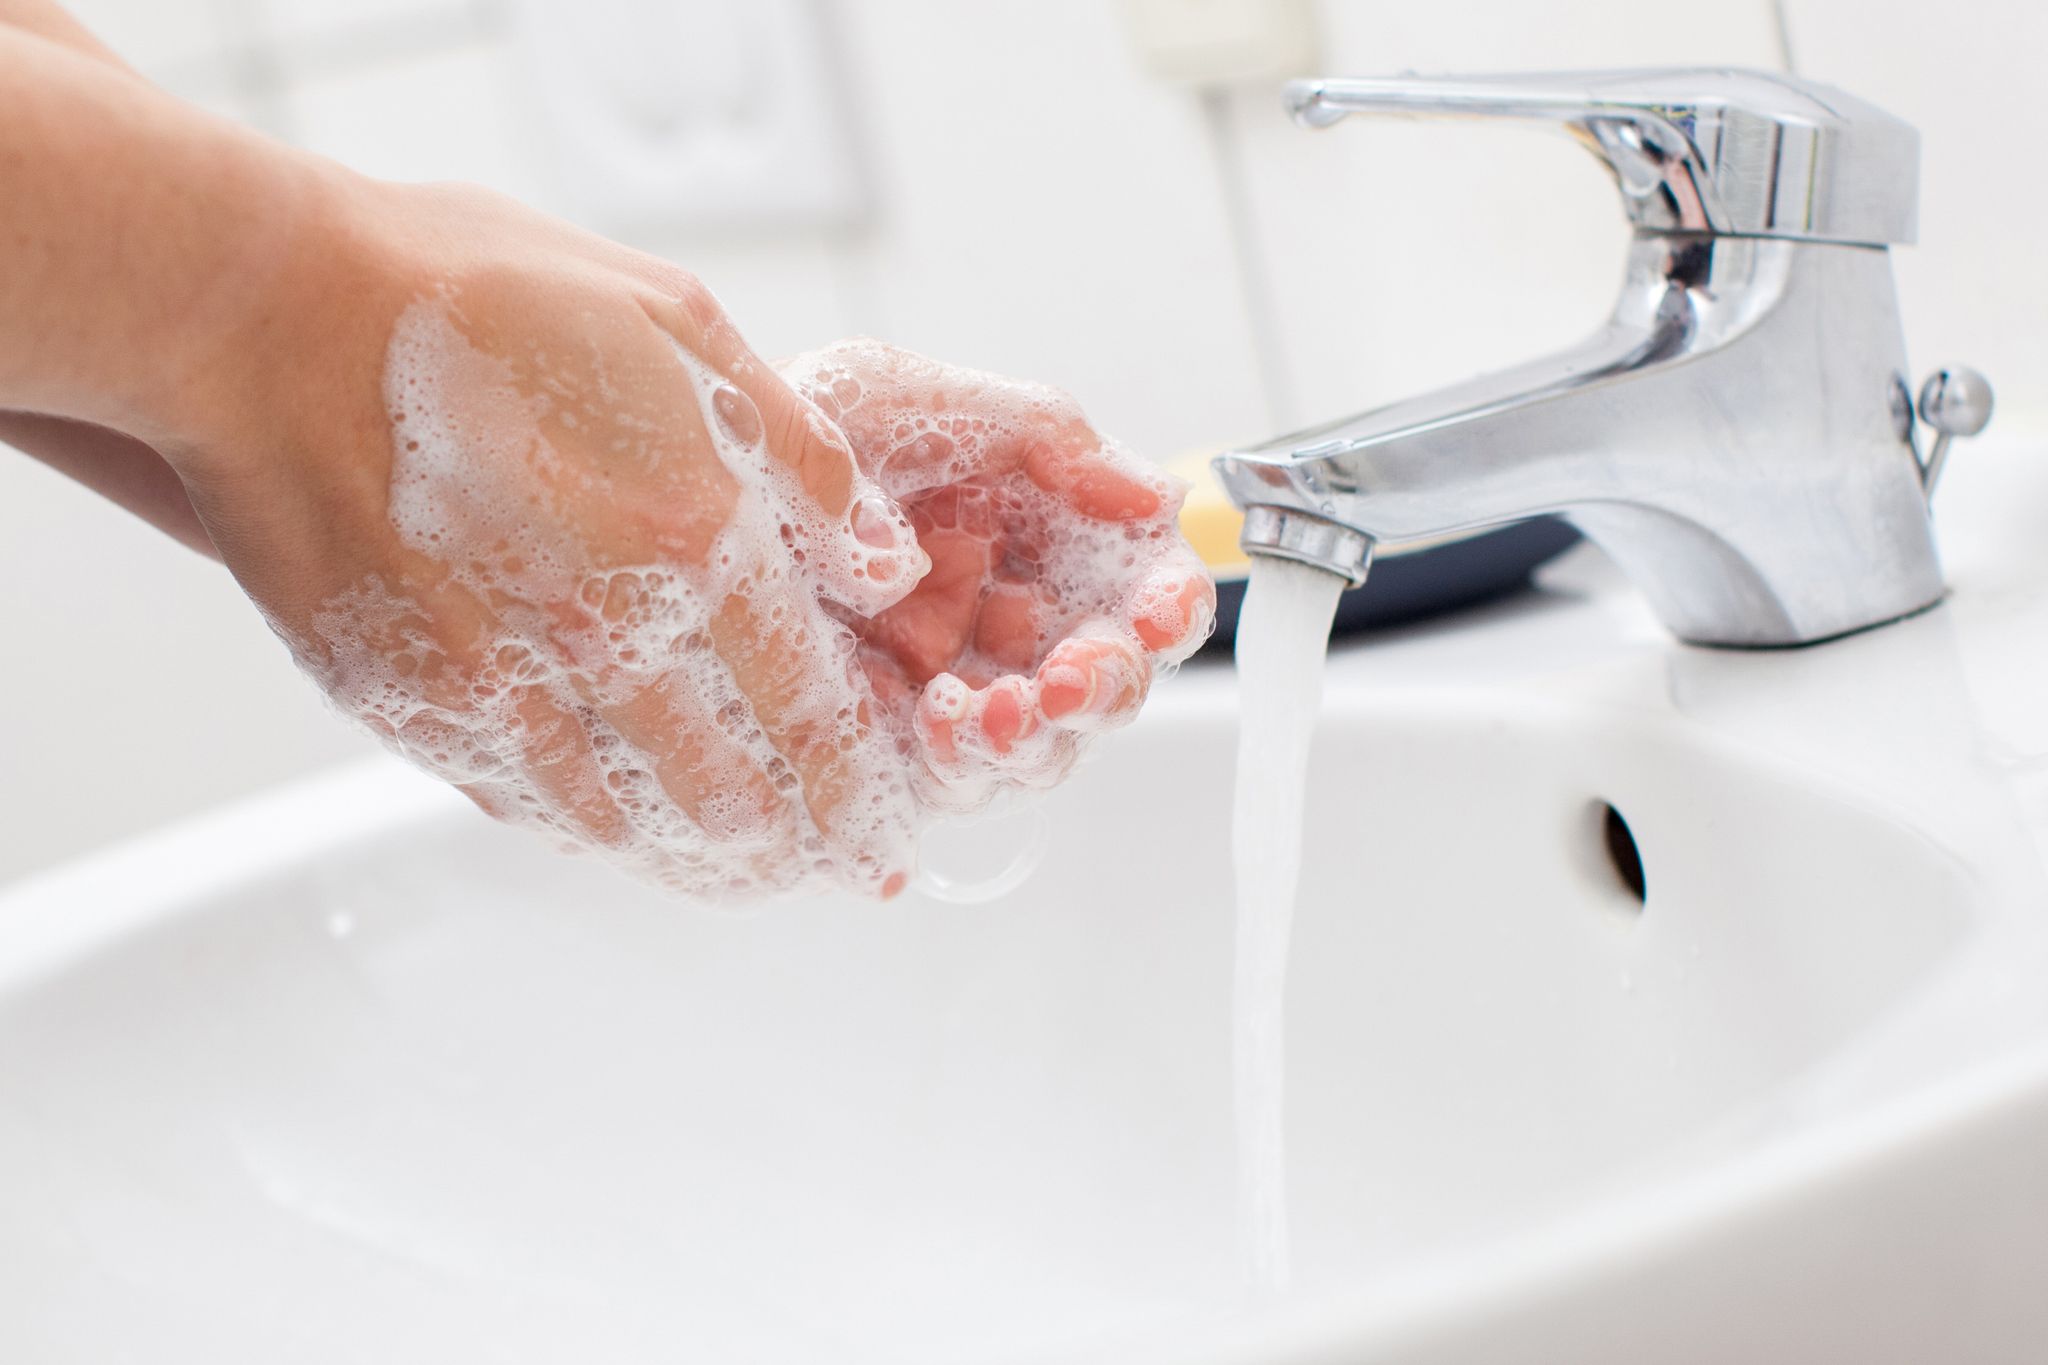 Regelmäßiges und gründliches Händewaschen mit Seife hilft, die Gesundheit zu schützen. Nicht vergessen: Hände danach gründlich abtrocknen - in öffentlichen Sanitäranlagen am besten mit sauberen Einmalhandtüchern.